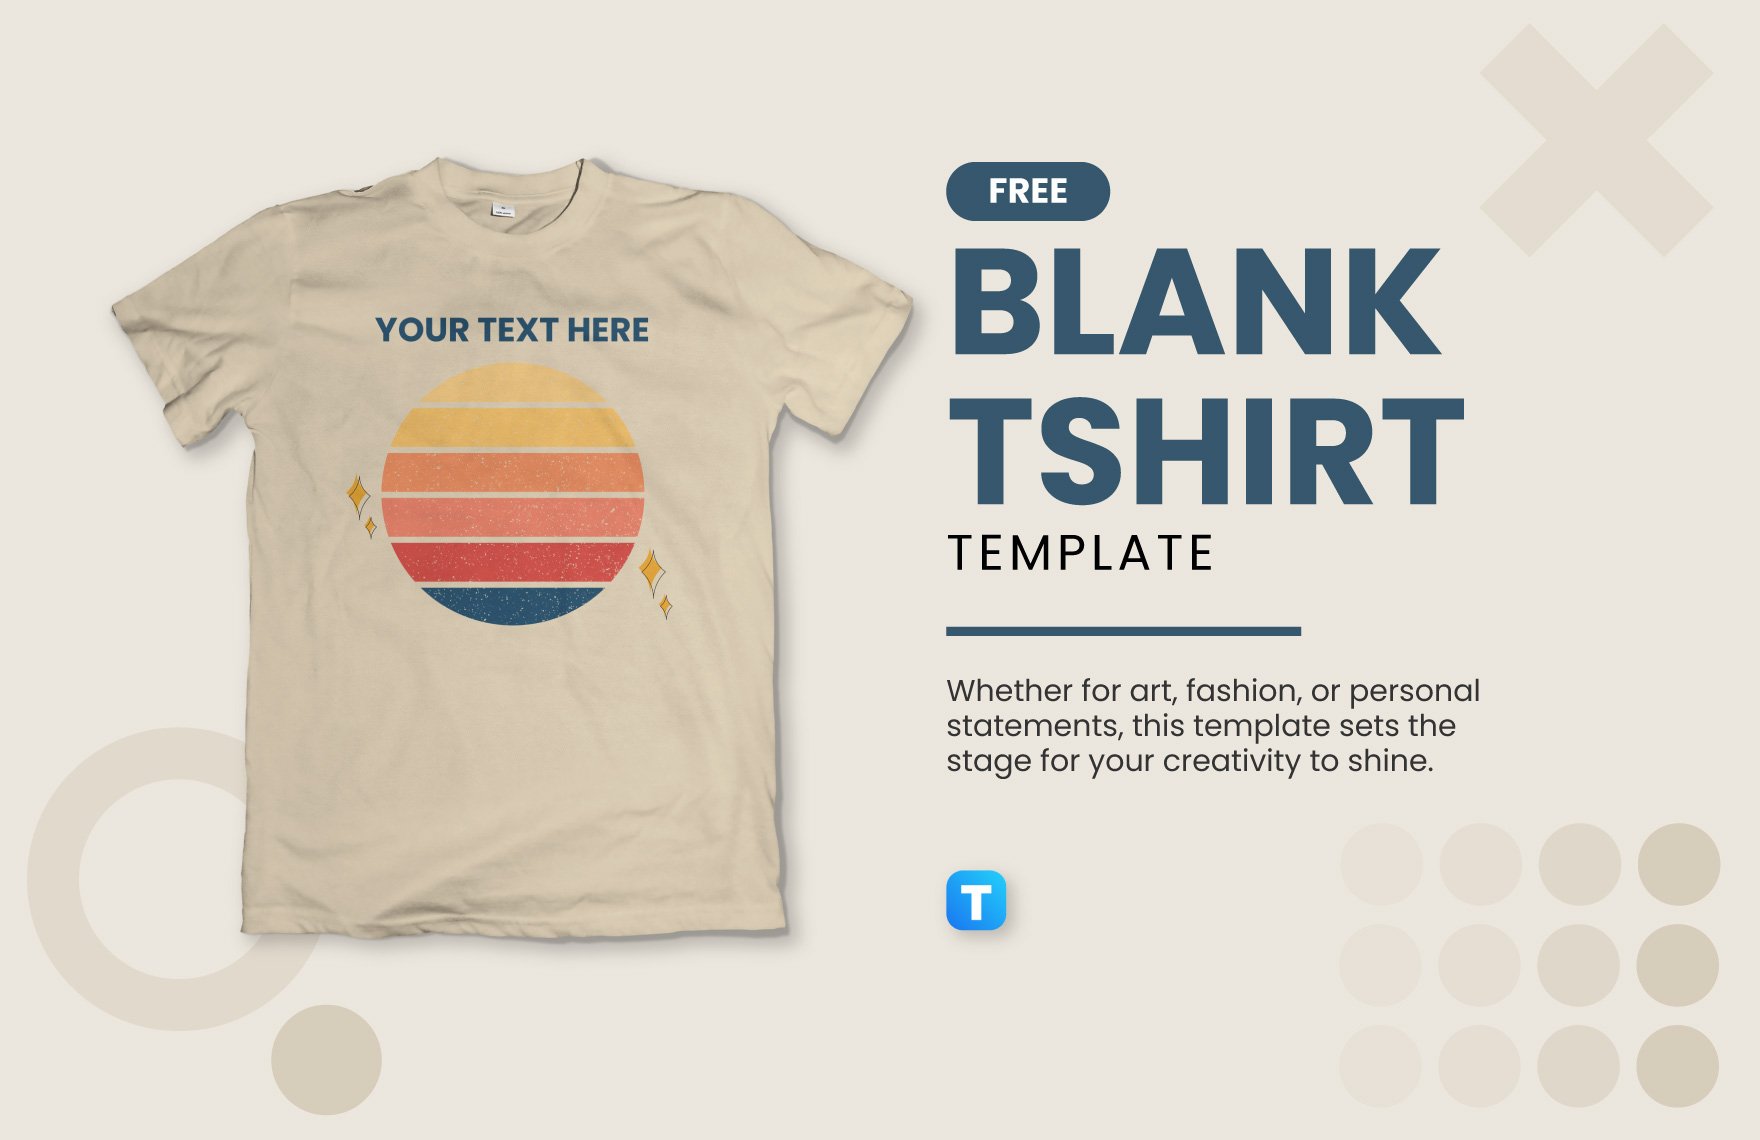 Free Blank Tshirt Template